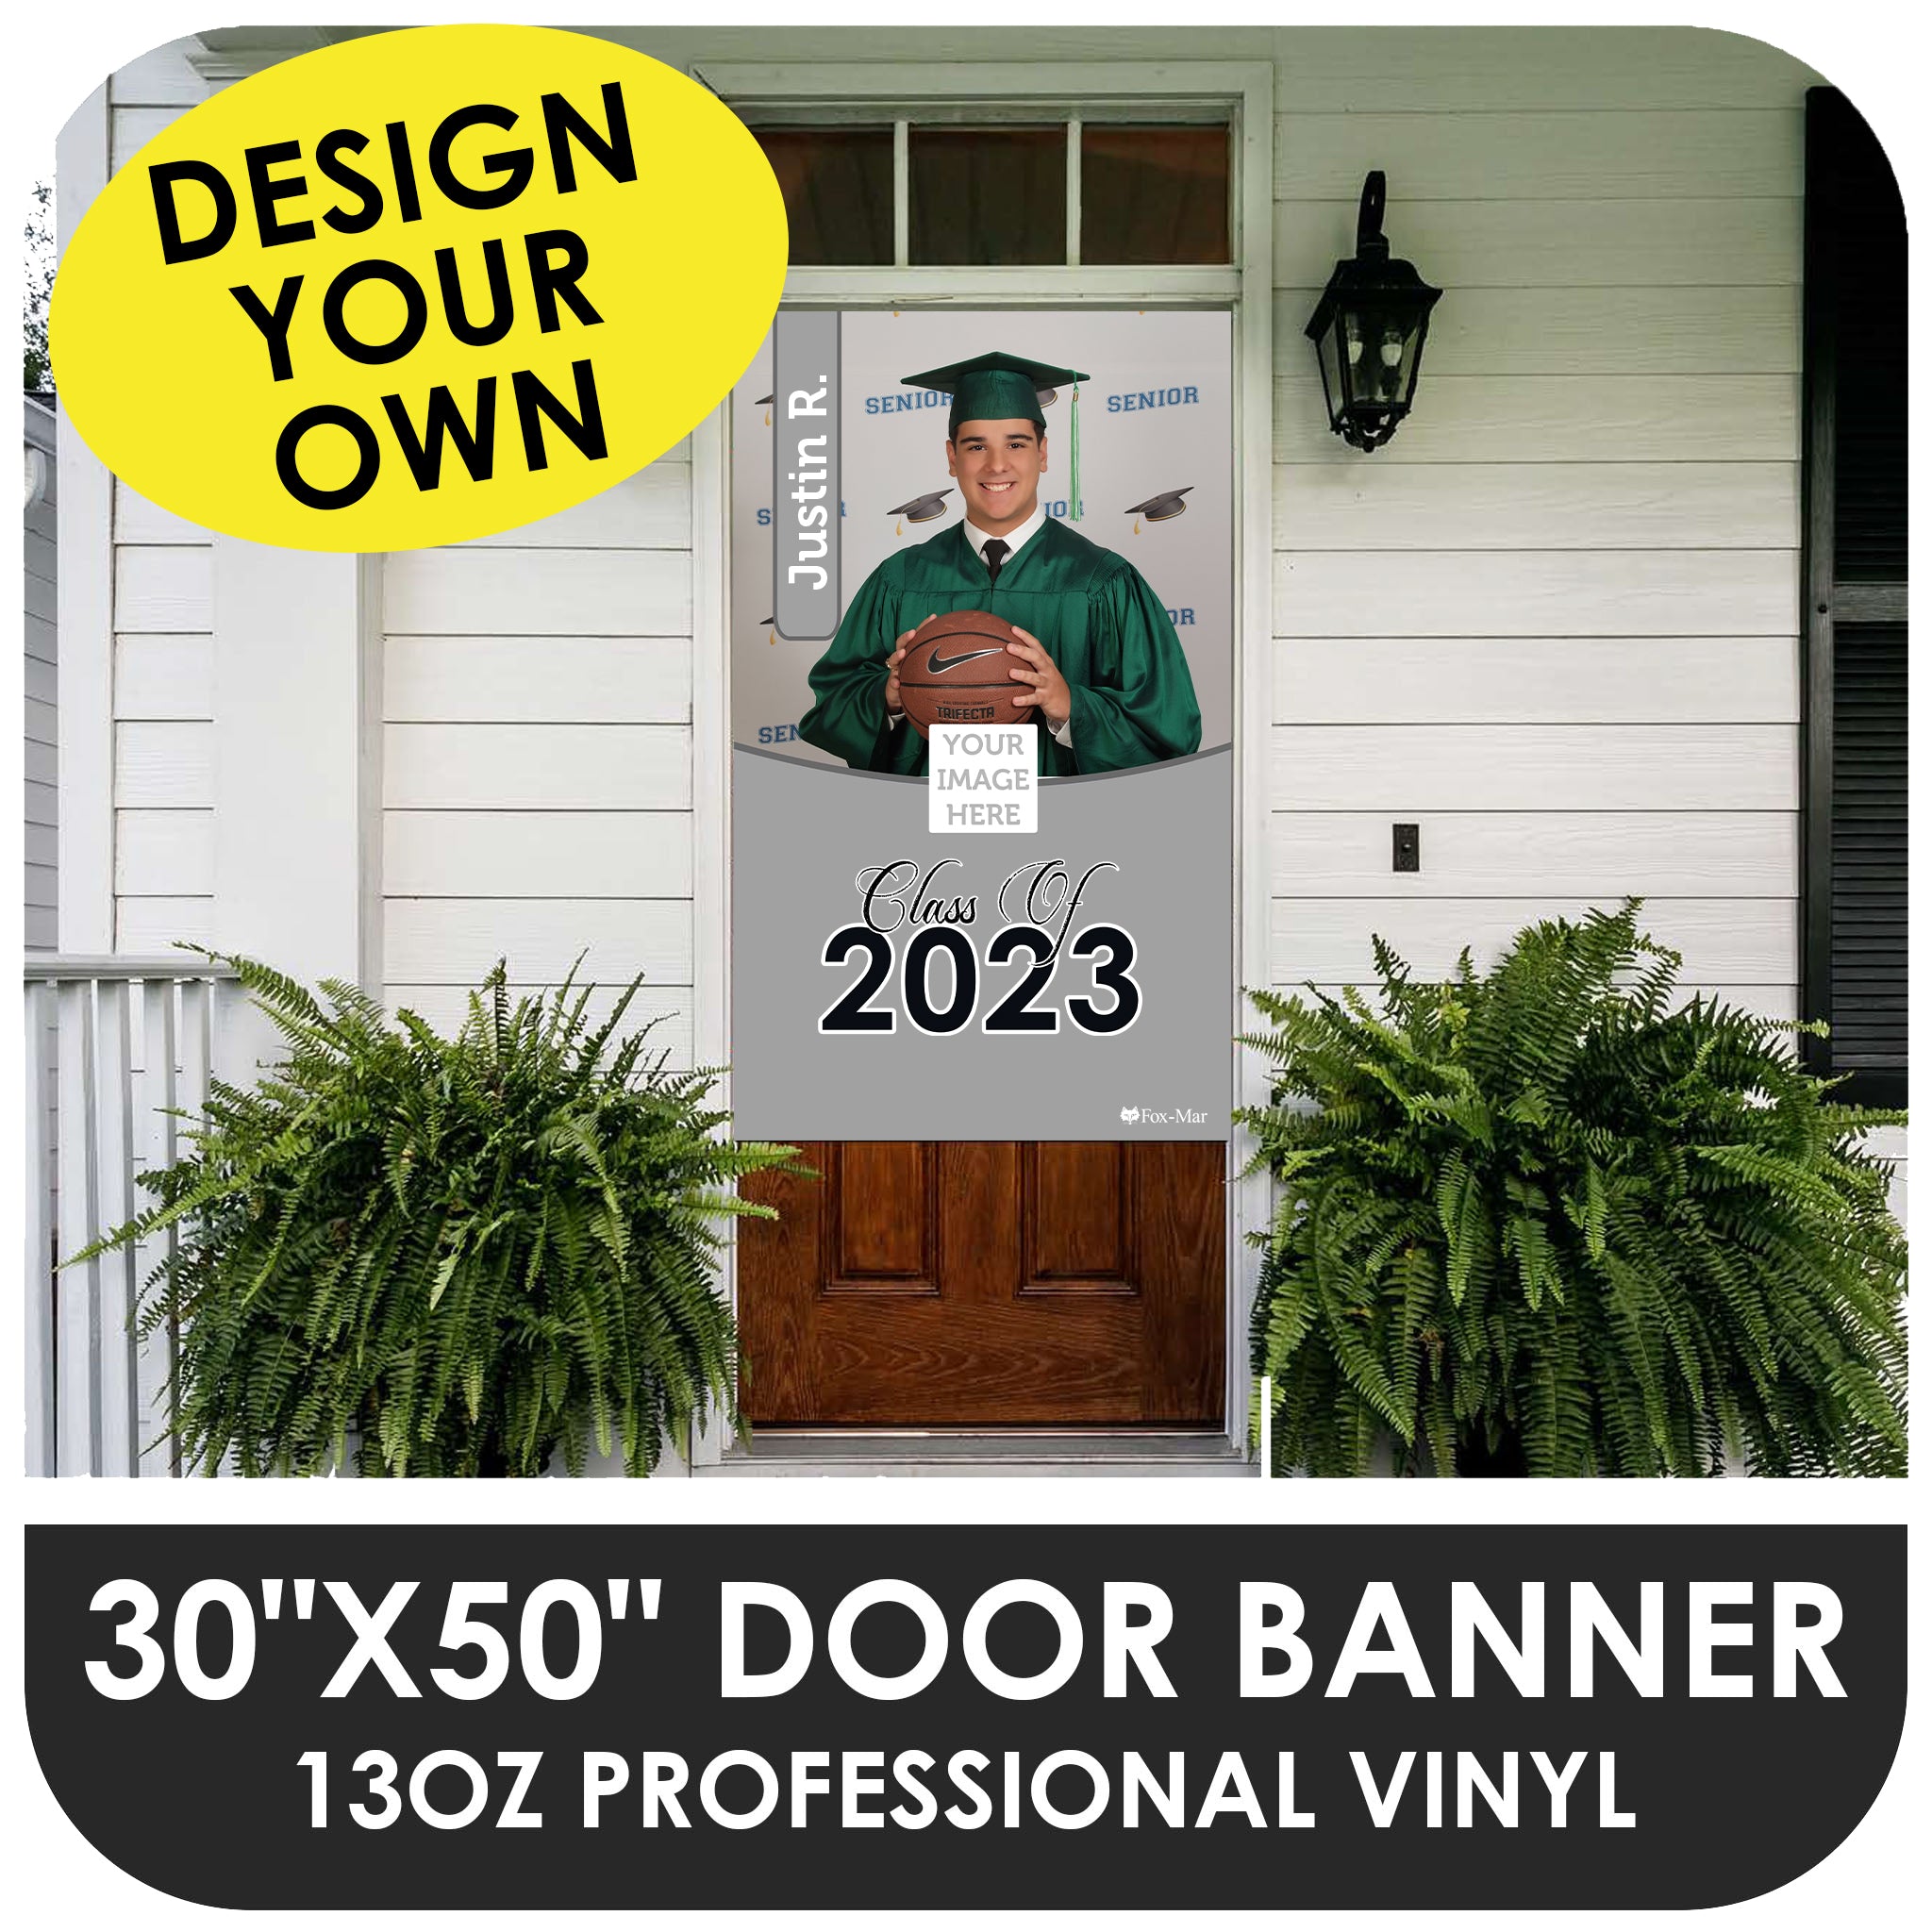 30"x50" Vinyl Balcony Banner / Door Sign - Create Your Own